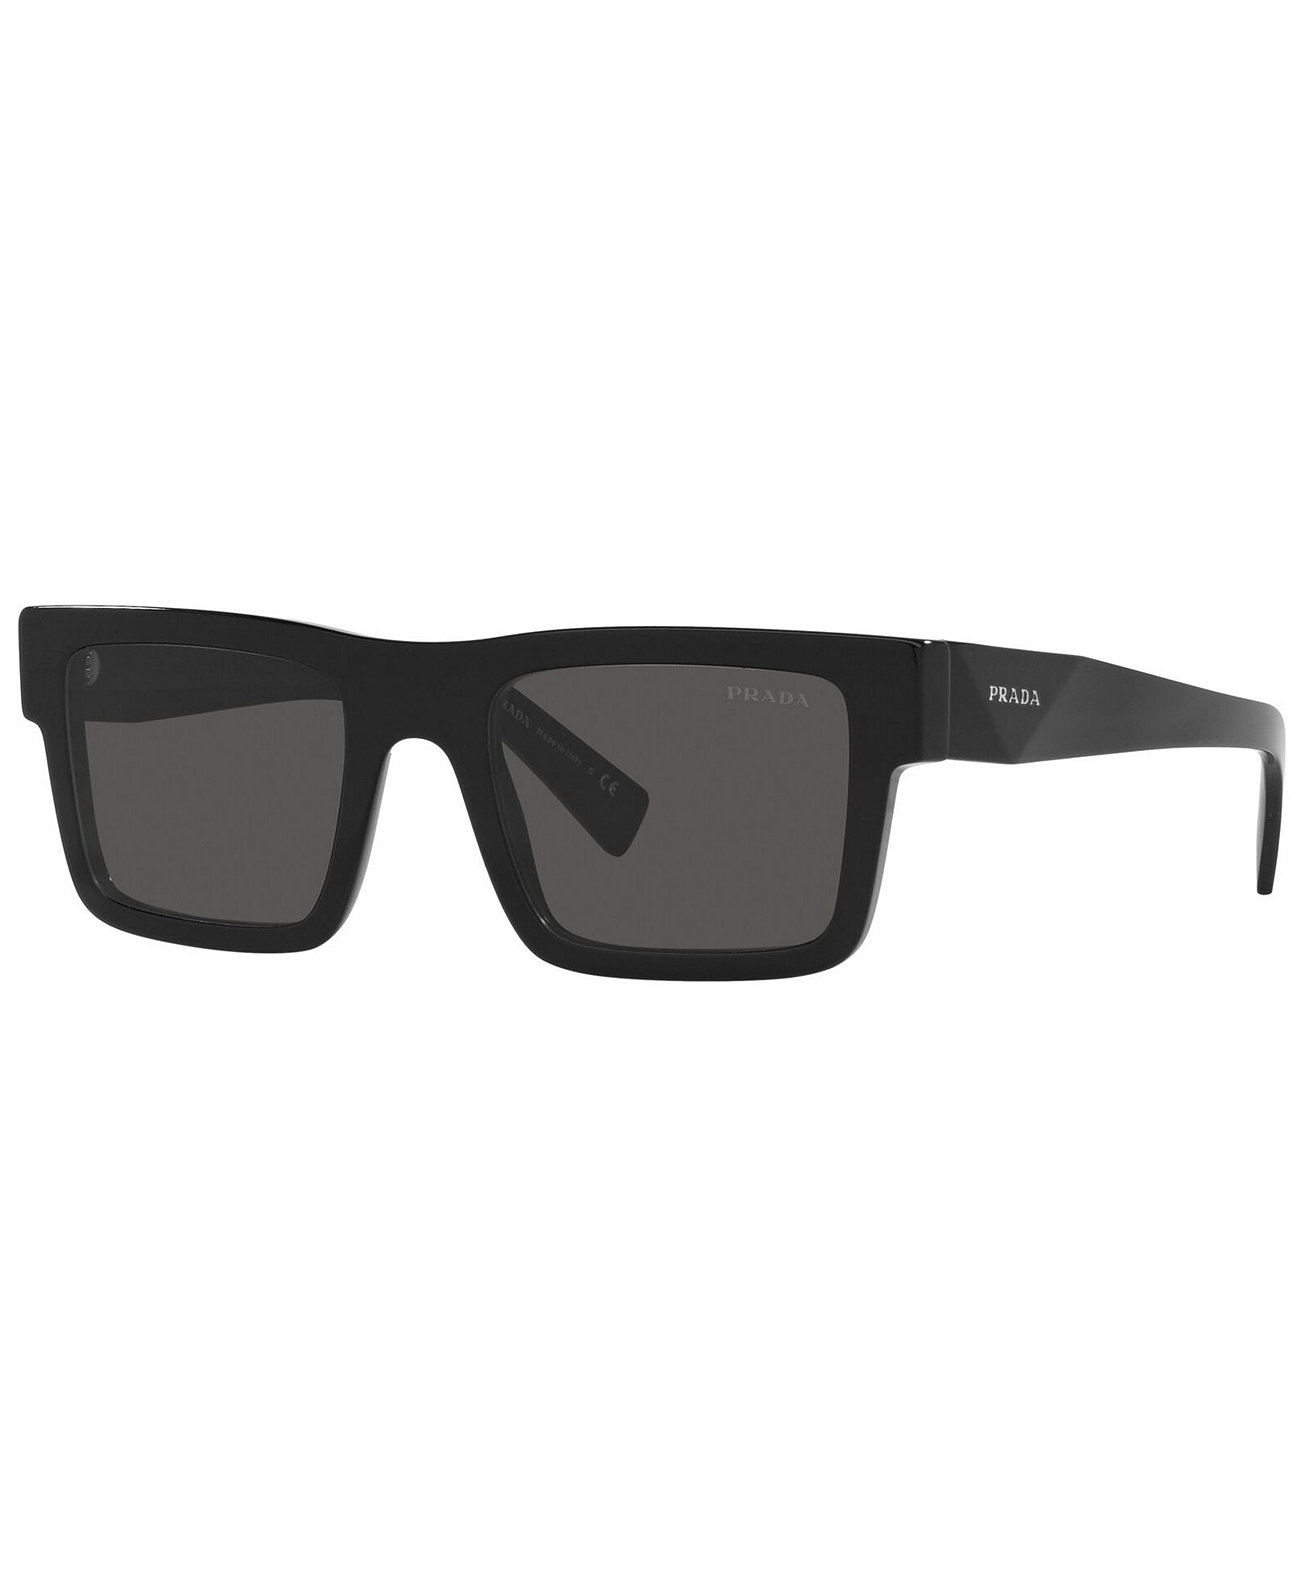 Мужские солнцезащитные очки, PR 19WS 52 Prada